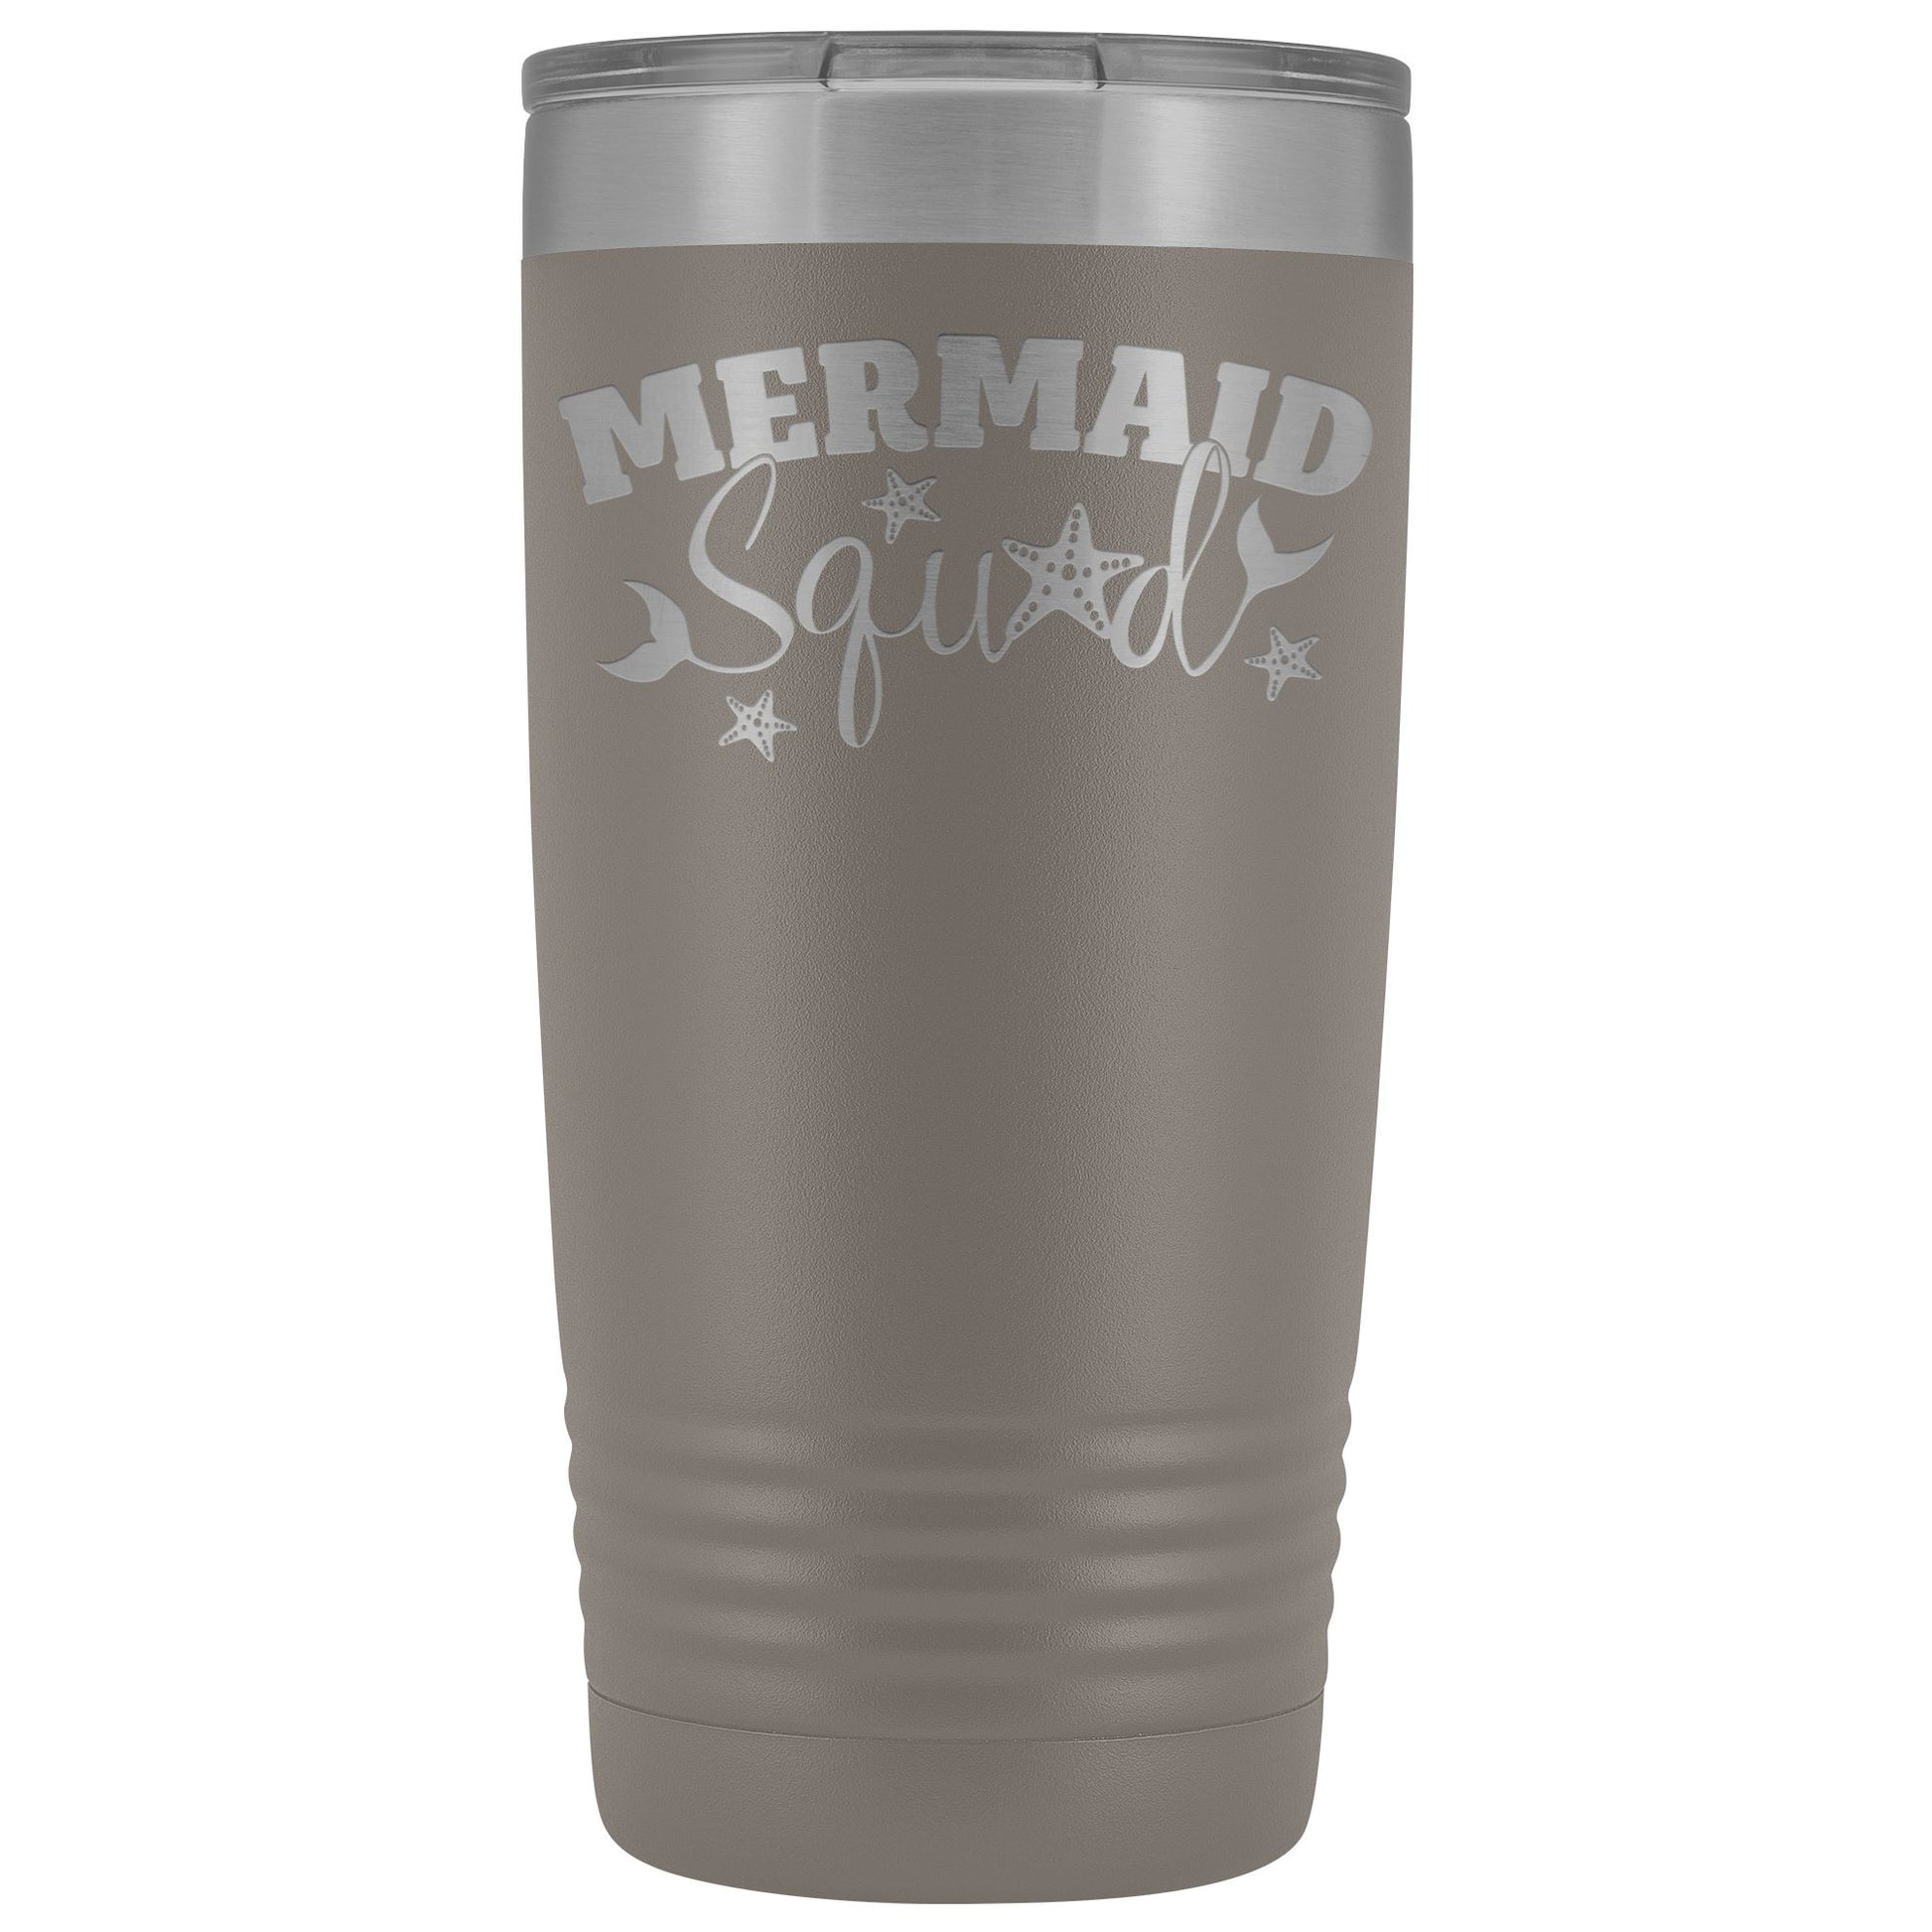 Mermaid Squad 20oz Insulated Tumbler